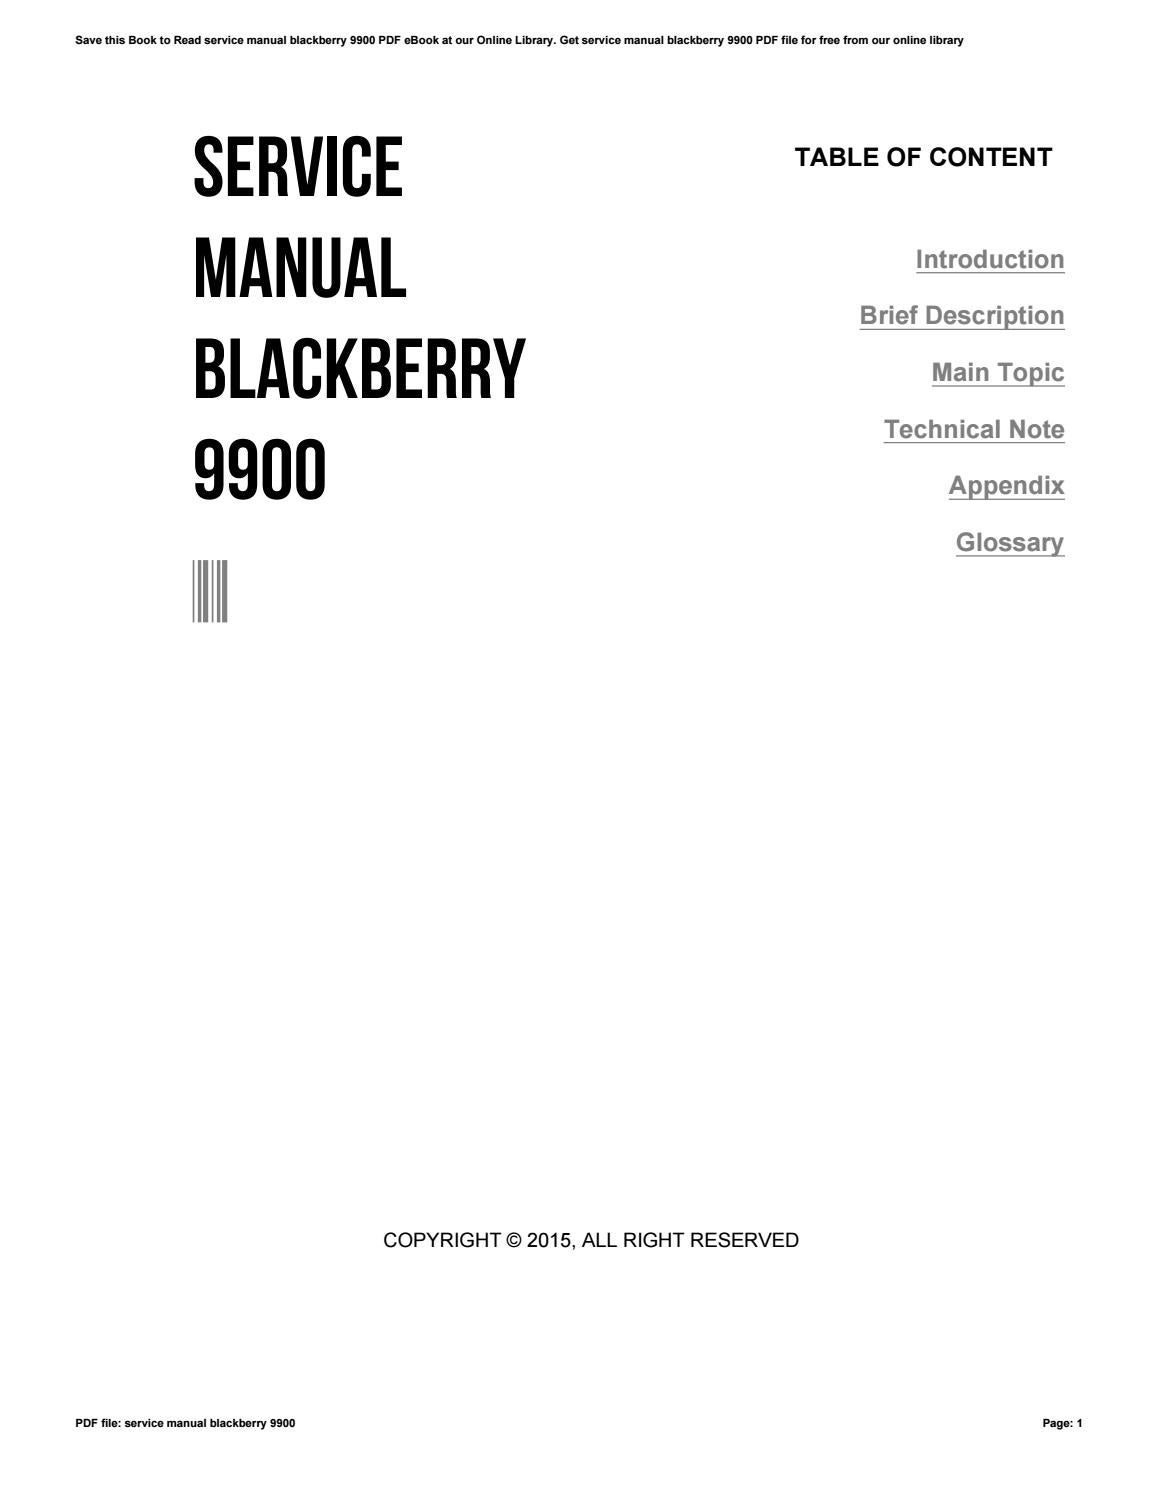 informazioni sul sistema di servizio non trovate blackberry 9900